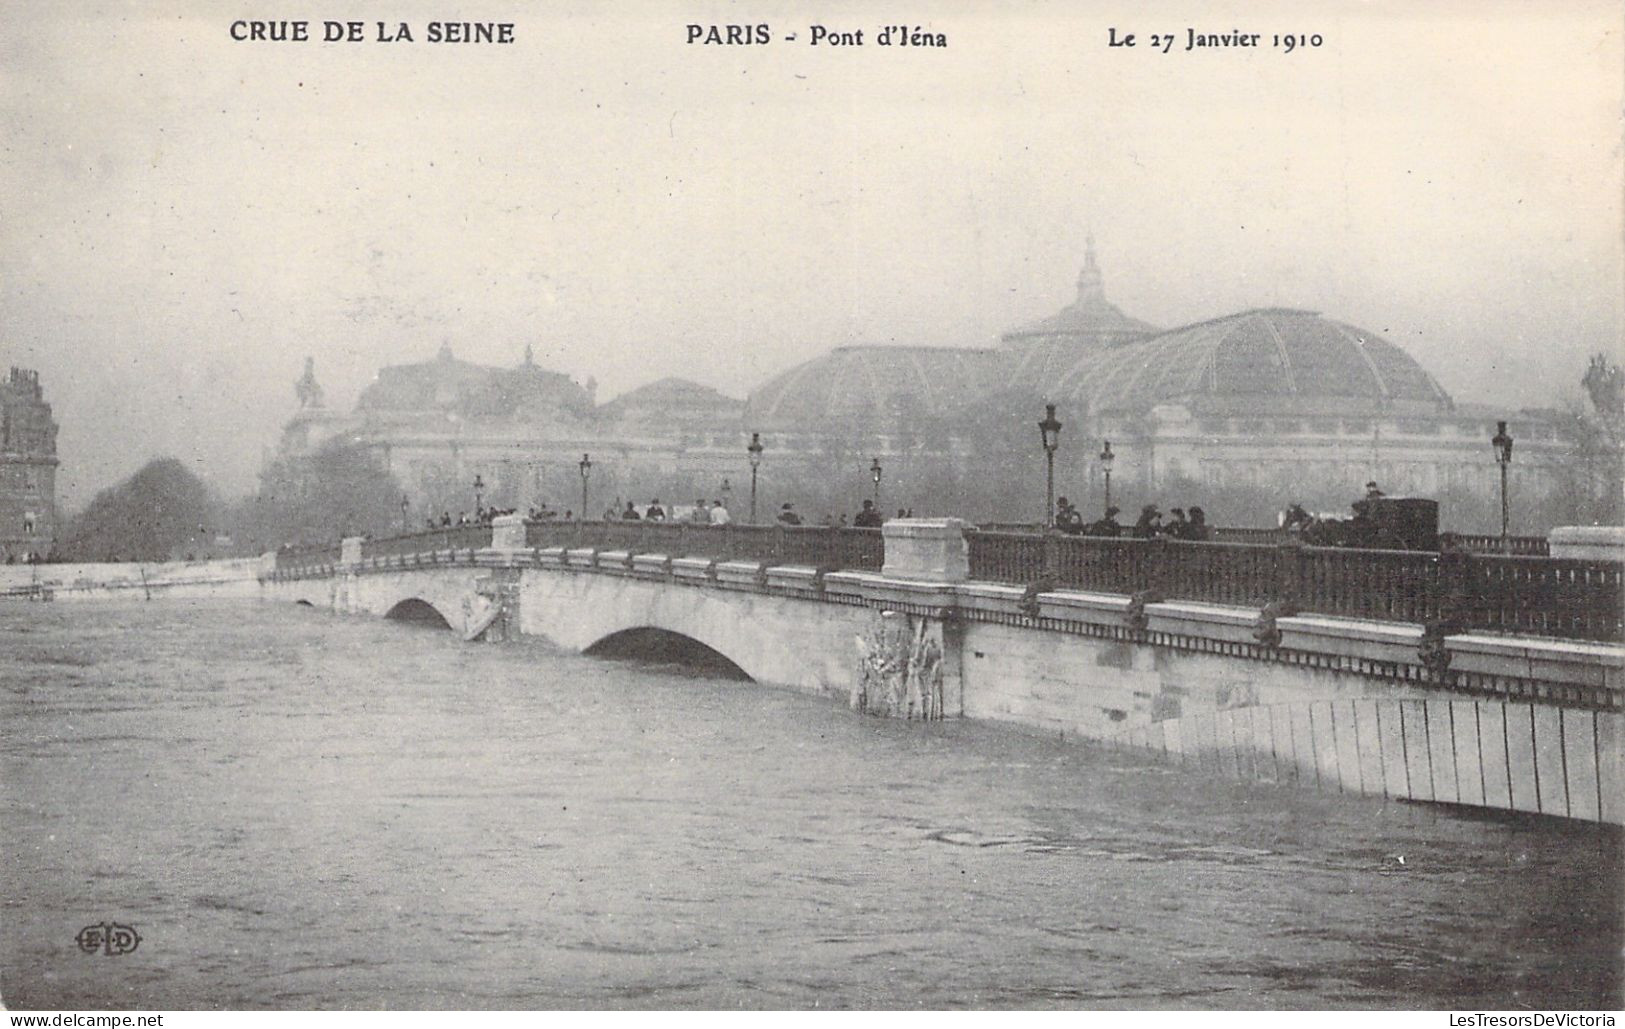 FRANCE - Paris - La Grande Crue De La Seine - Pont D'iéna - 27 Janvier 1910 - Carte Postale Ancienne - Die Seine Und Ihre Ufer